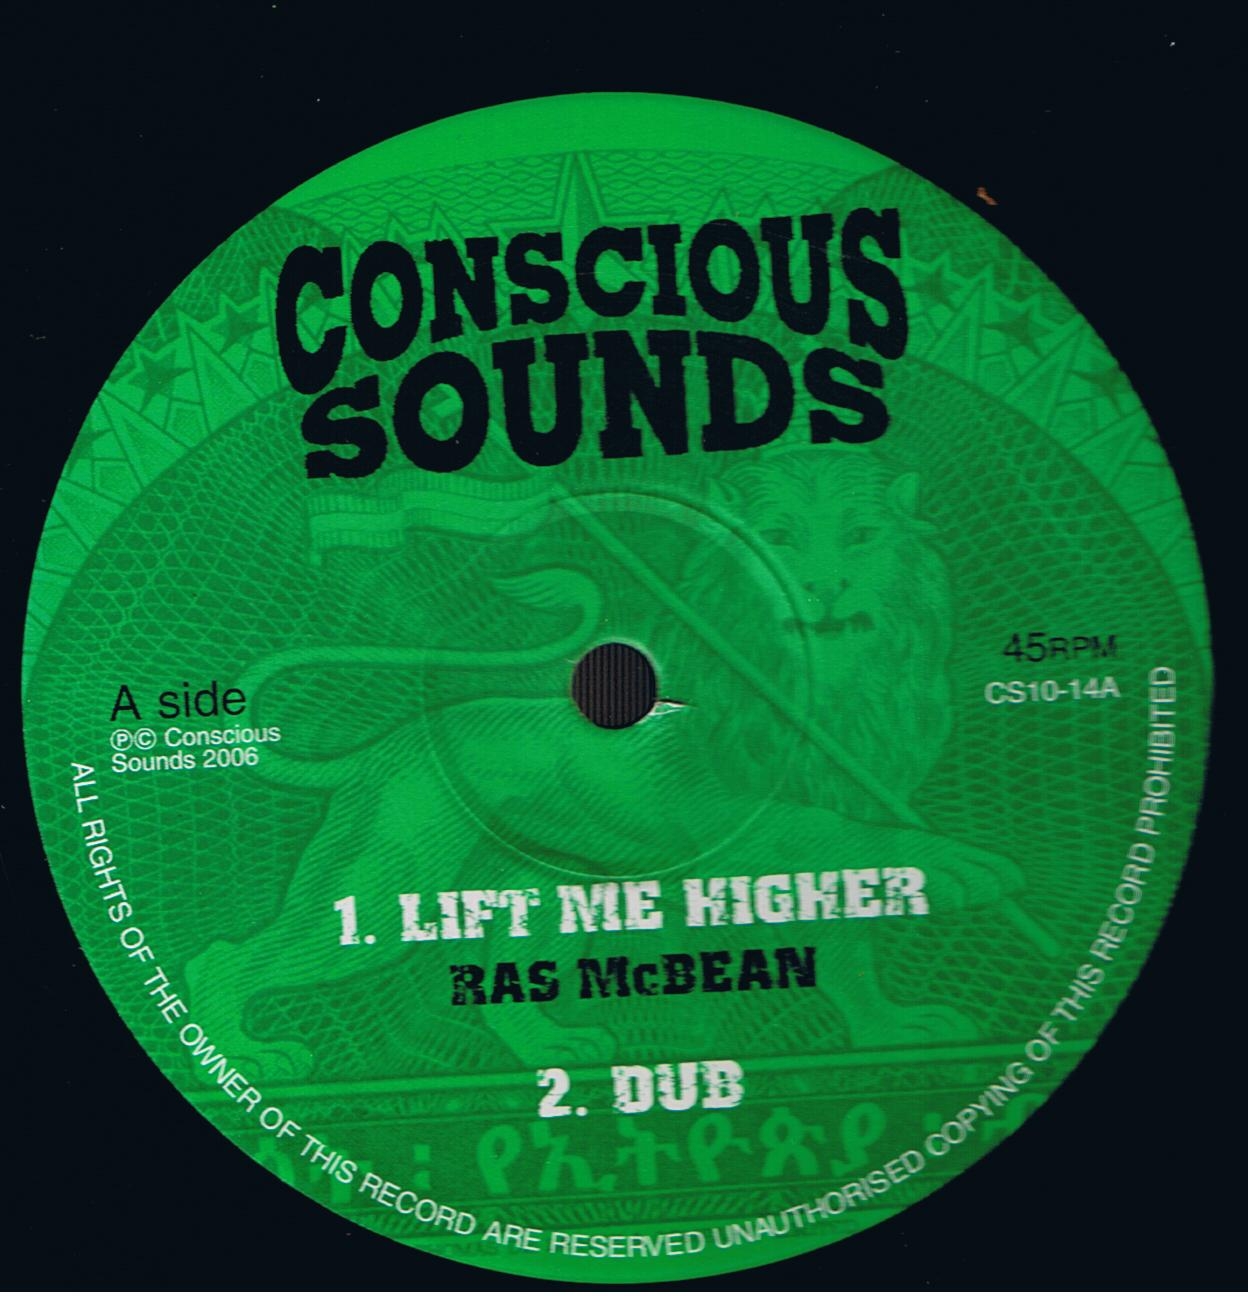 Ras Mc Bean - Lift Me Higher / Ras Mc Bean - Dub / Culture Freeman - On A Mission / Culture Freeman - Dub (10")